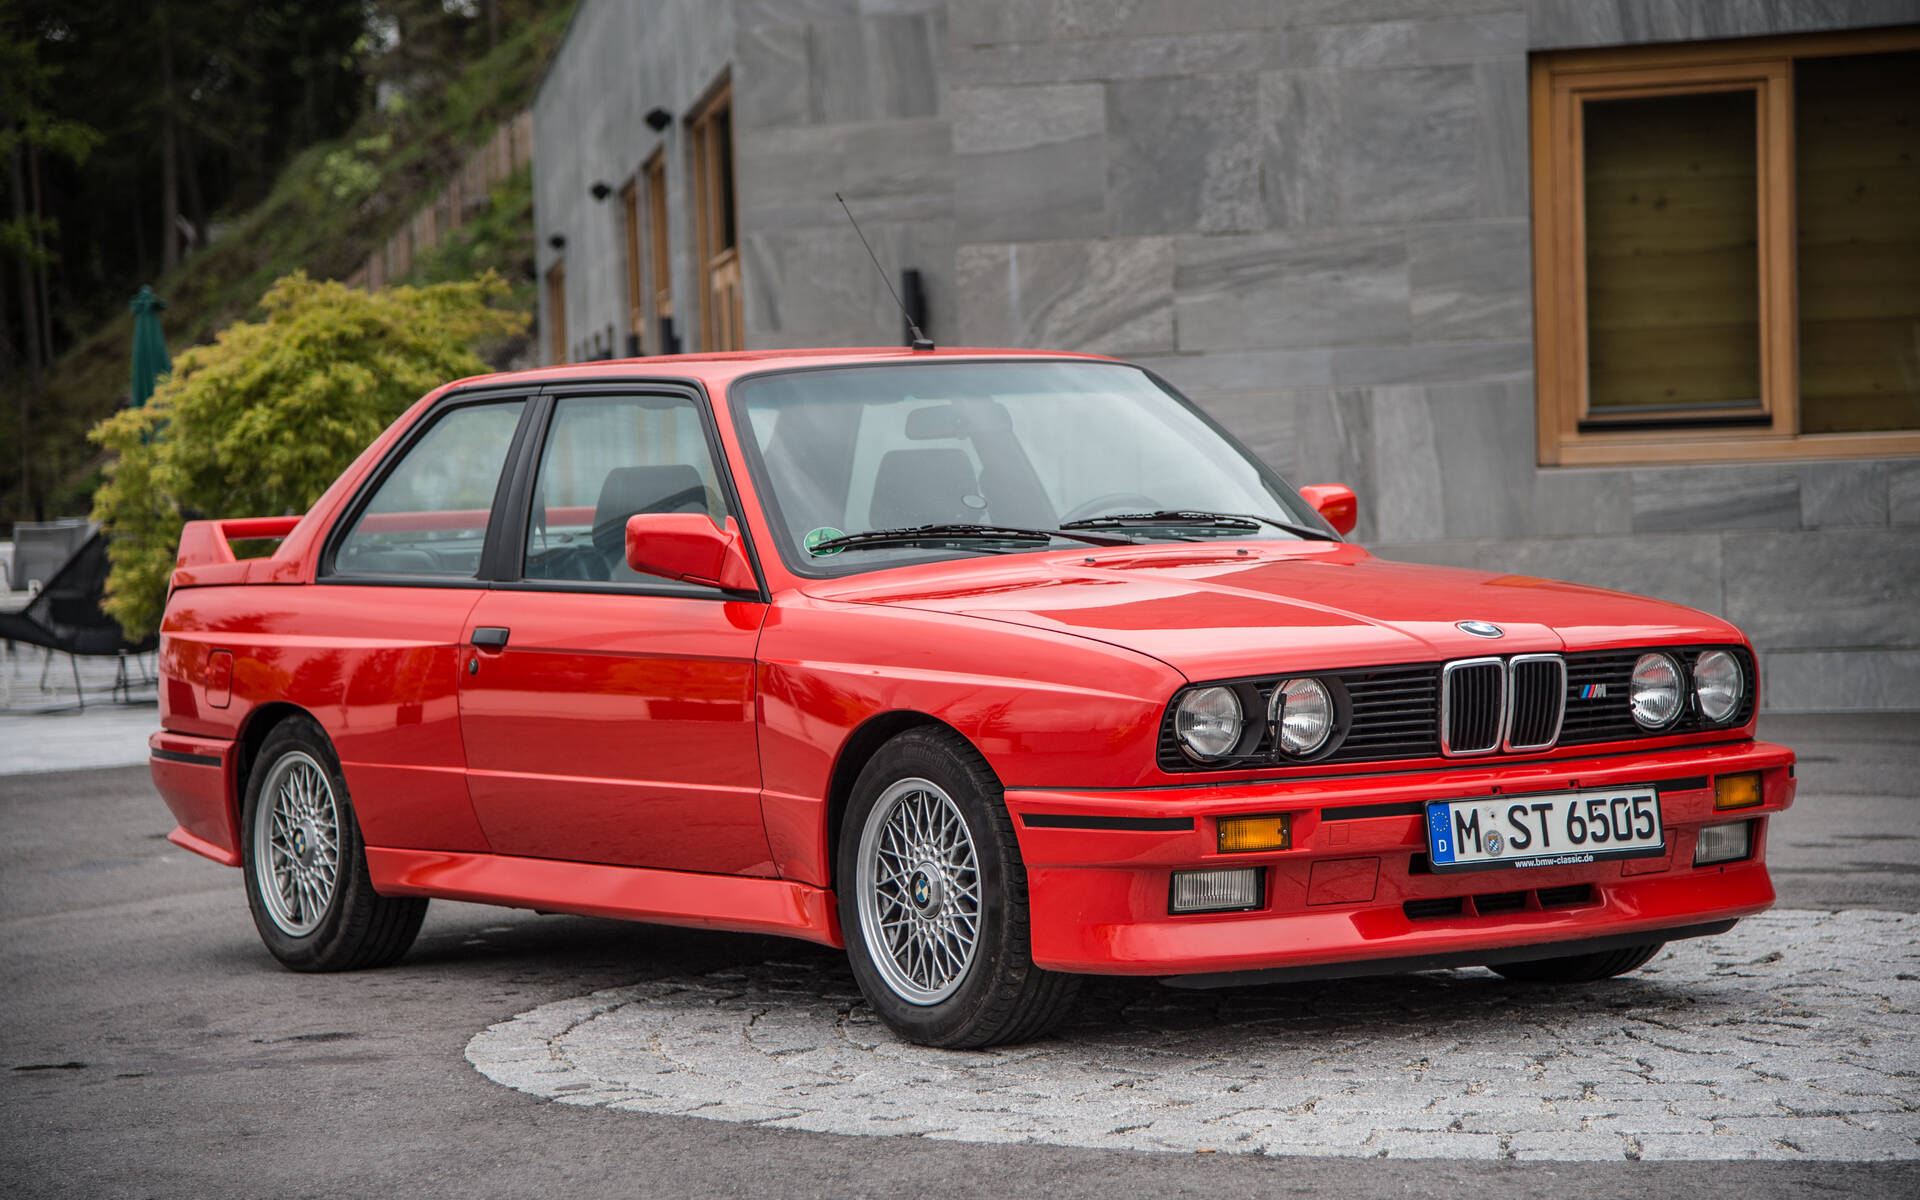 50 ans de voitures BMW M en images 527883-50-ans-de-voitures-bmw-m-en-images